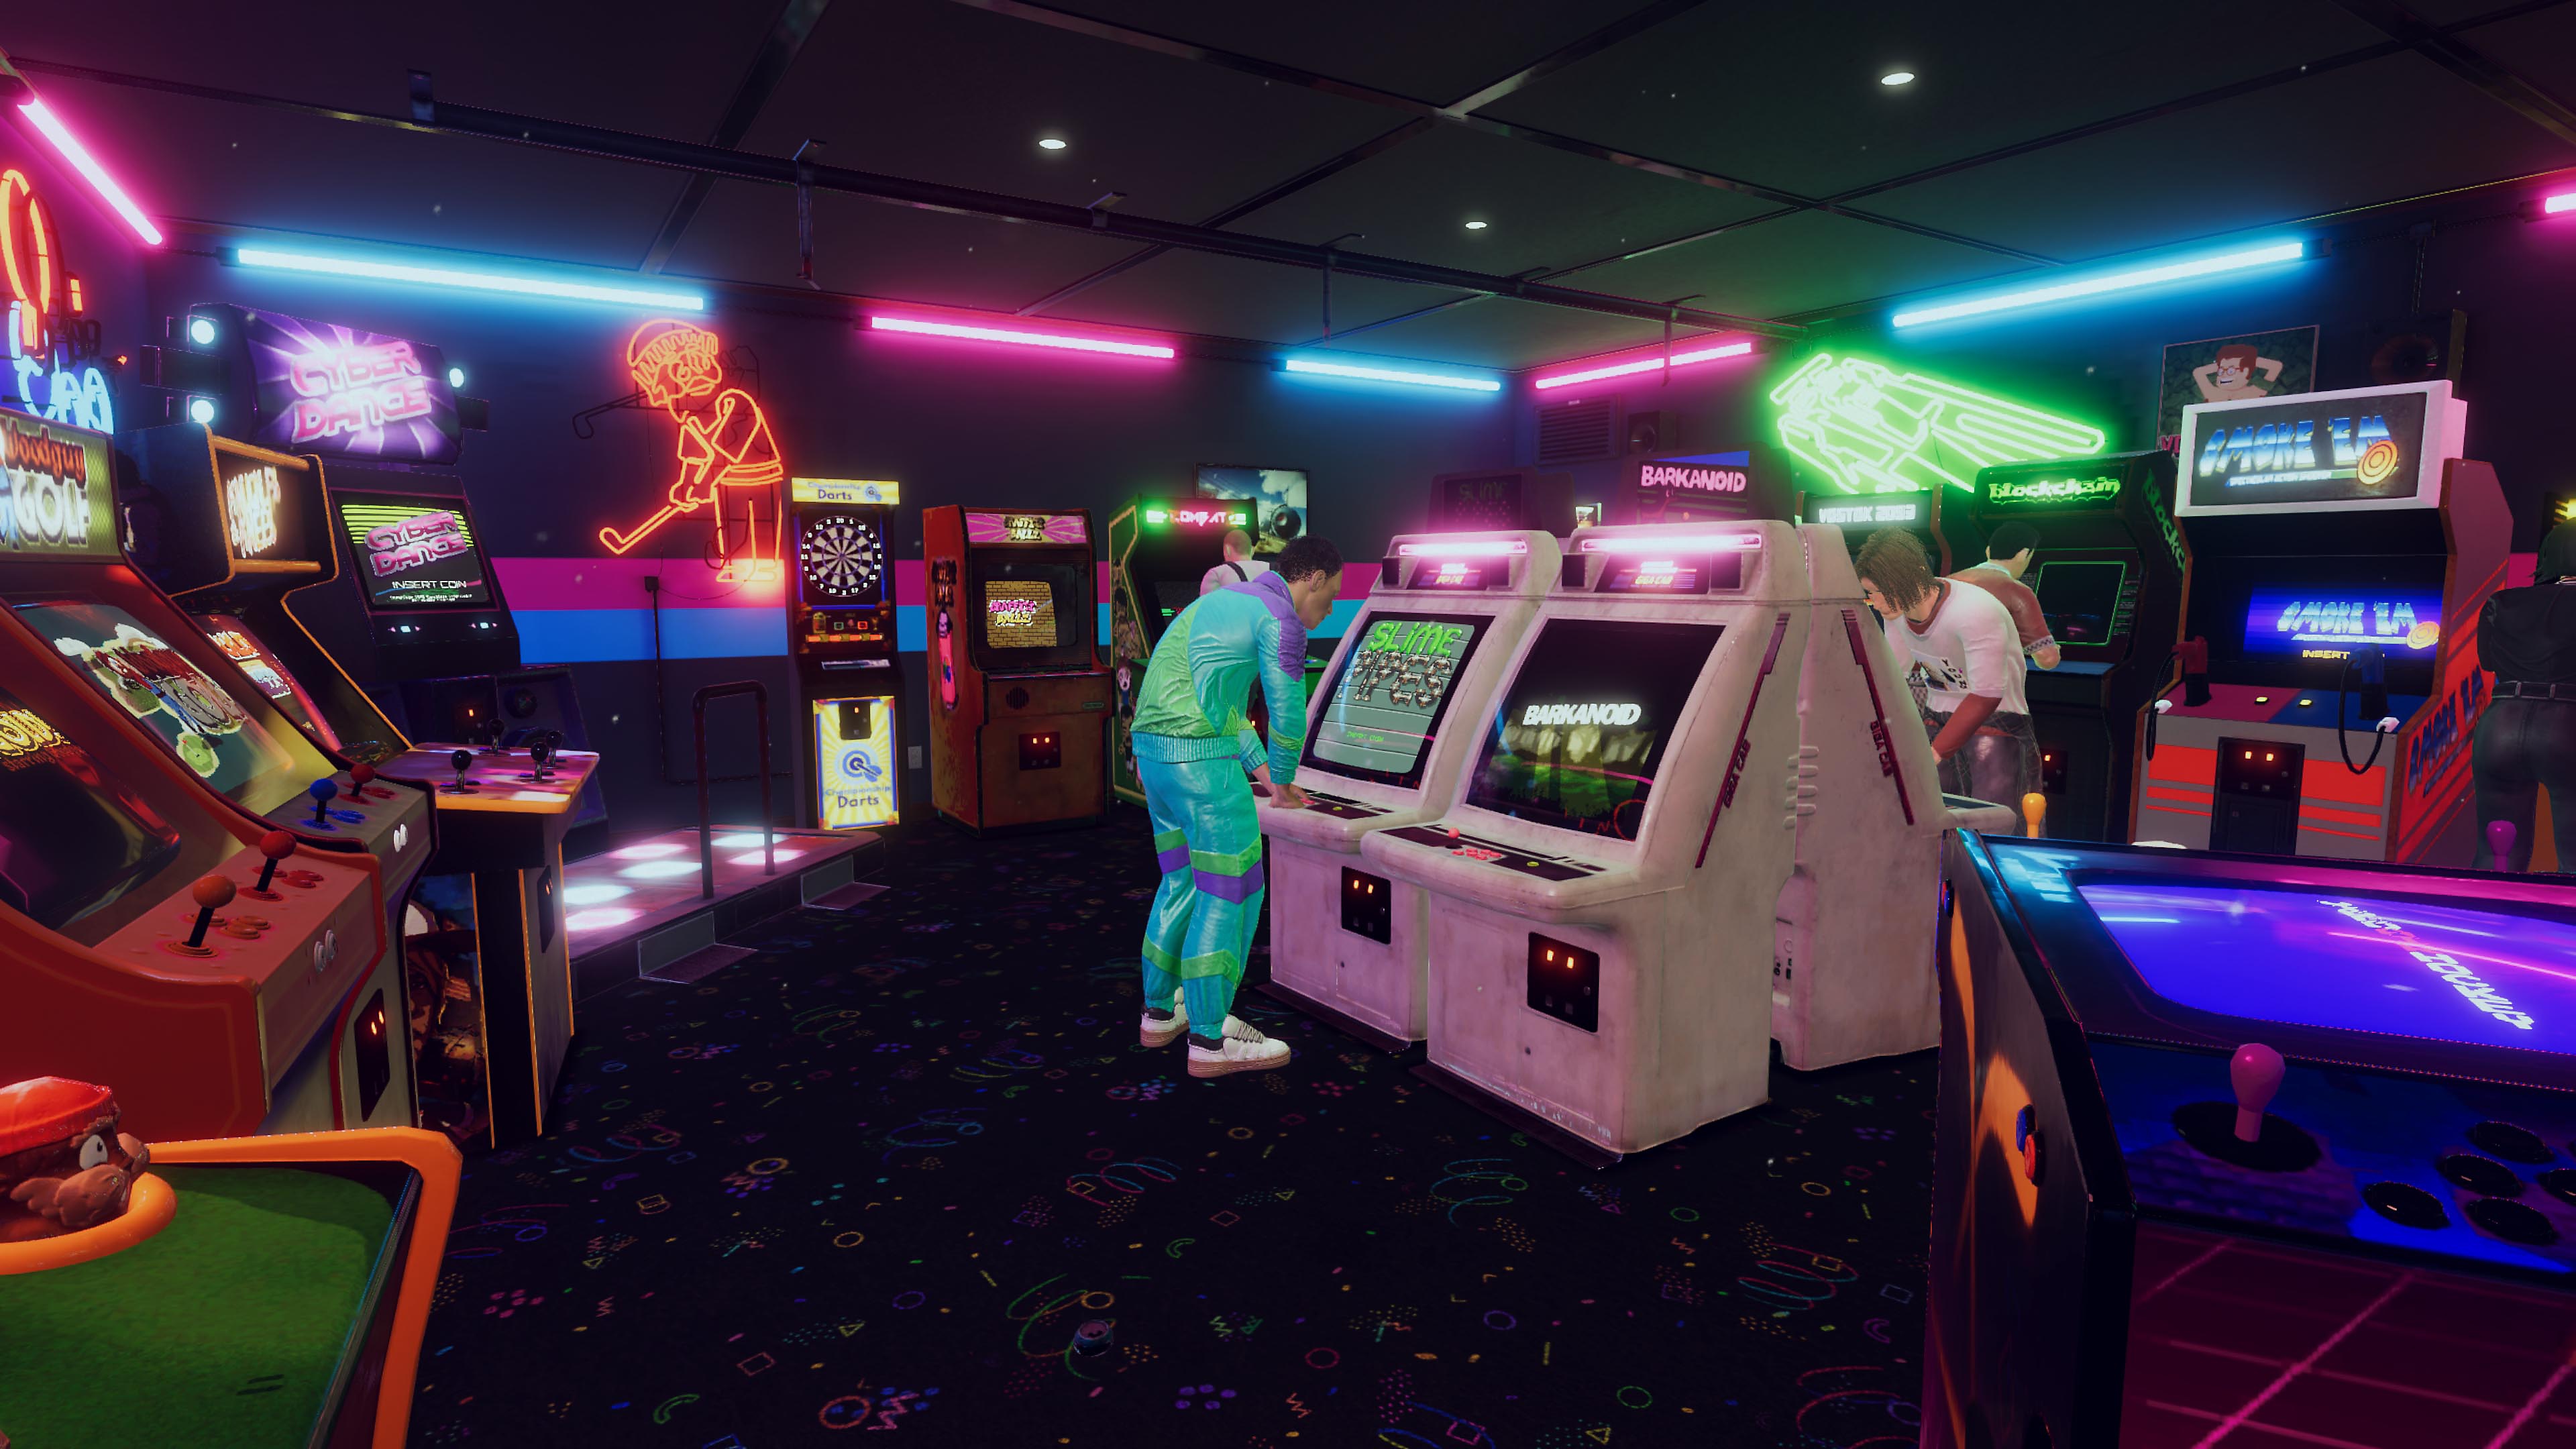 Arcade Paradise – zrzut ekranu przedstawiający salon automatowy retro w stylu lat 90., z niebiesko-różowymi neonami